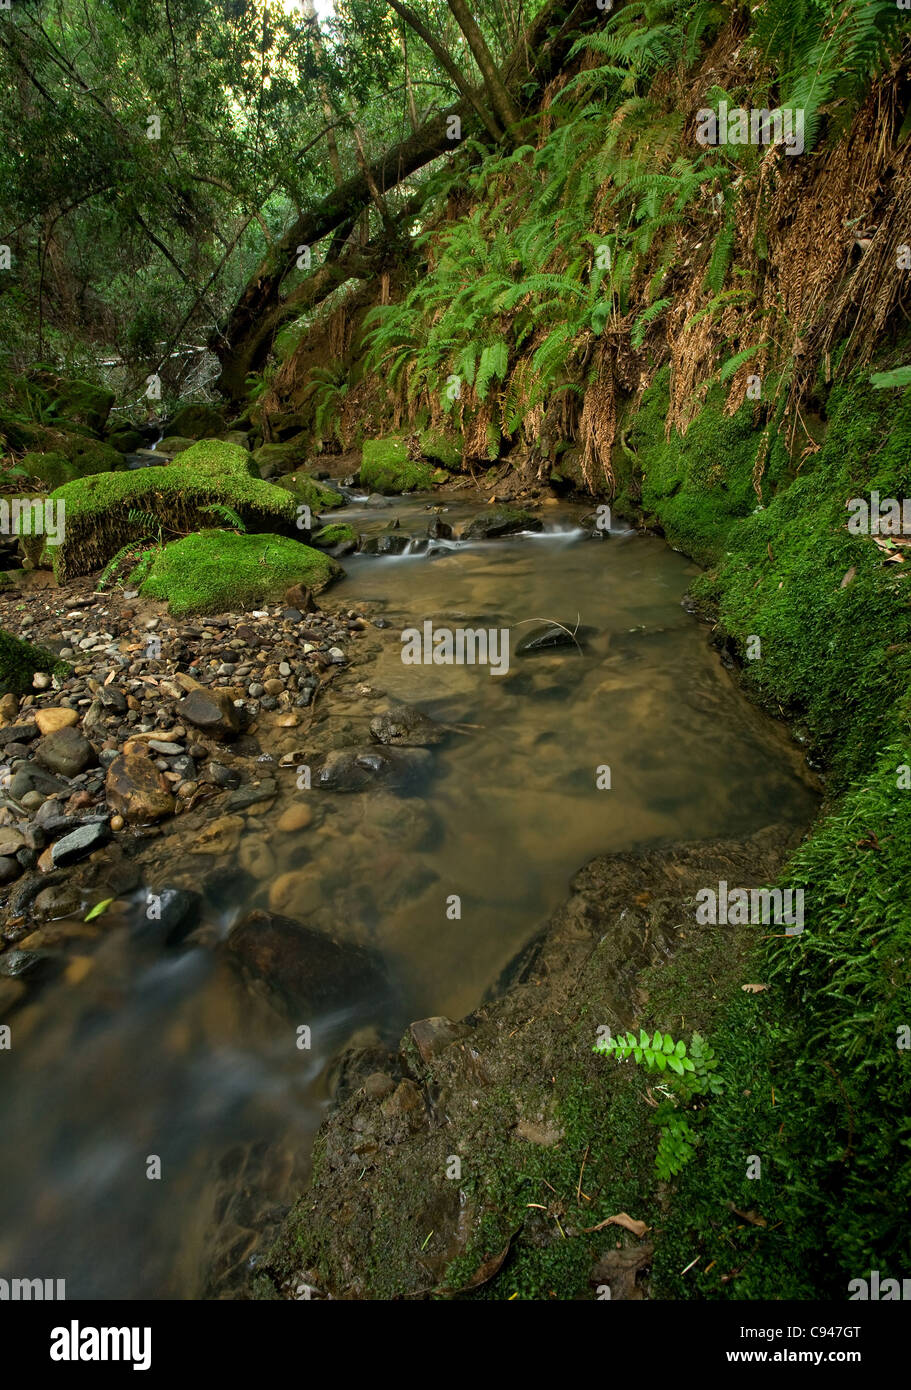 Una remota preistoria rain forest con grandi felci, situata in California Foto Stock